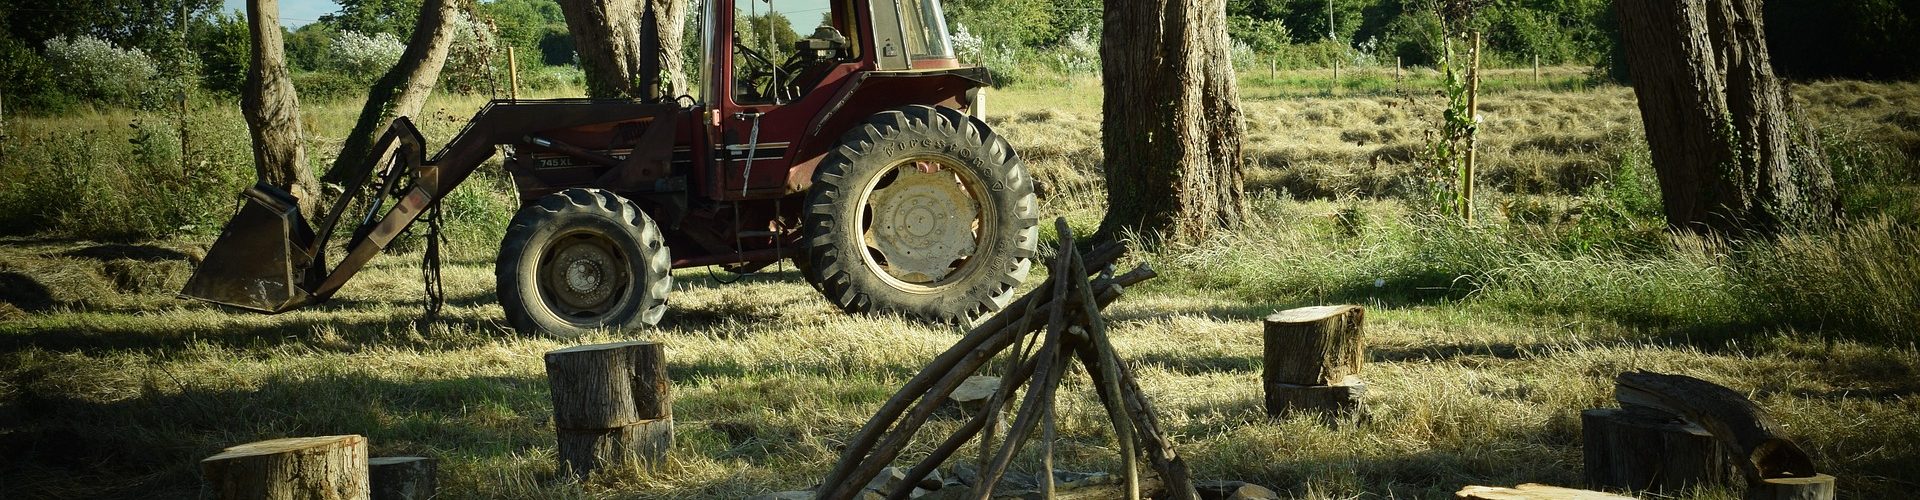 Fendeuse à bois sur roue - Fendeur bûche derrière remorque & tracteur